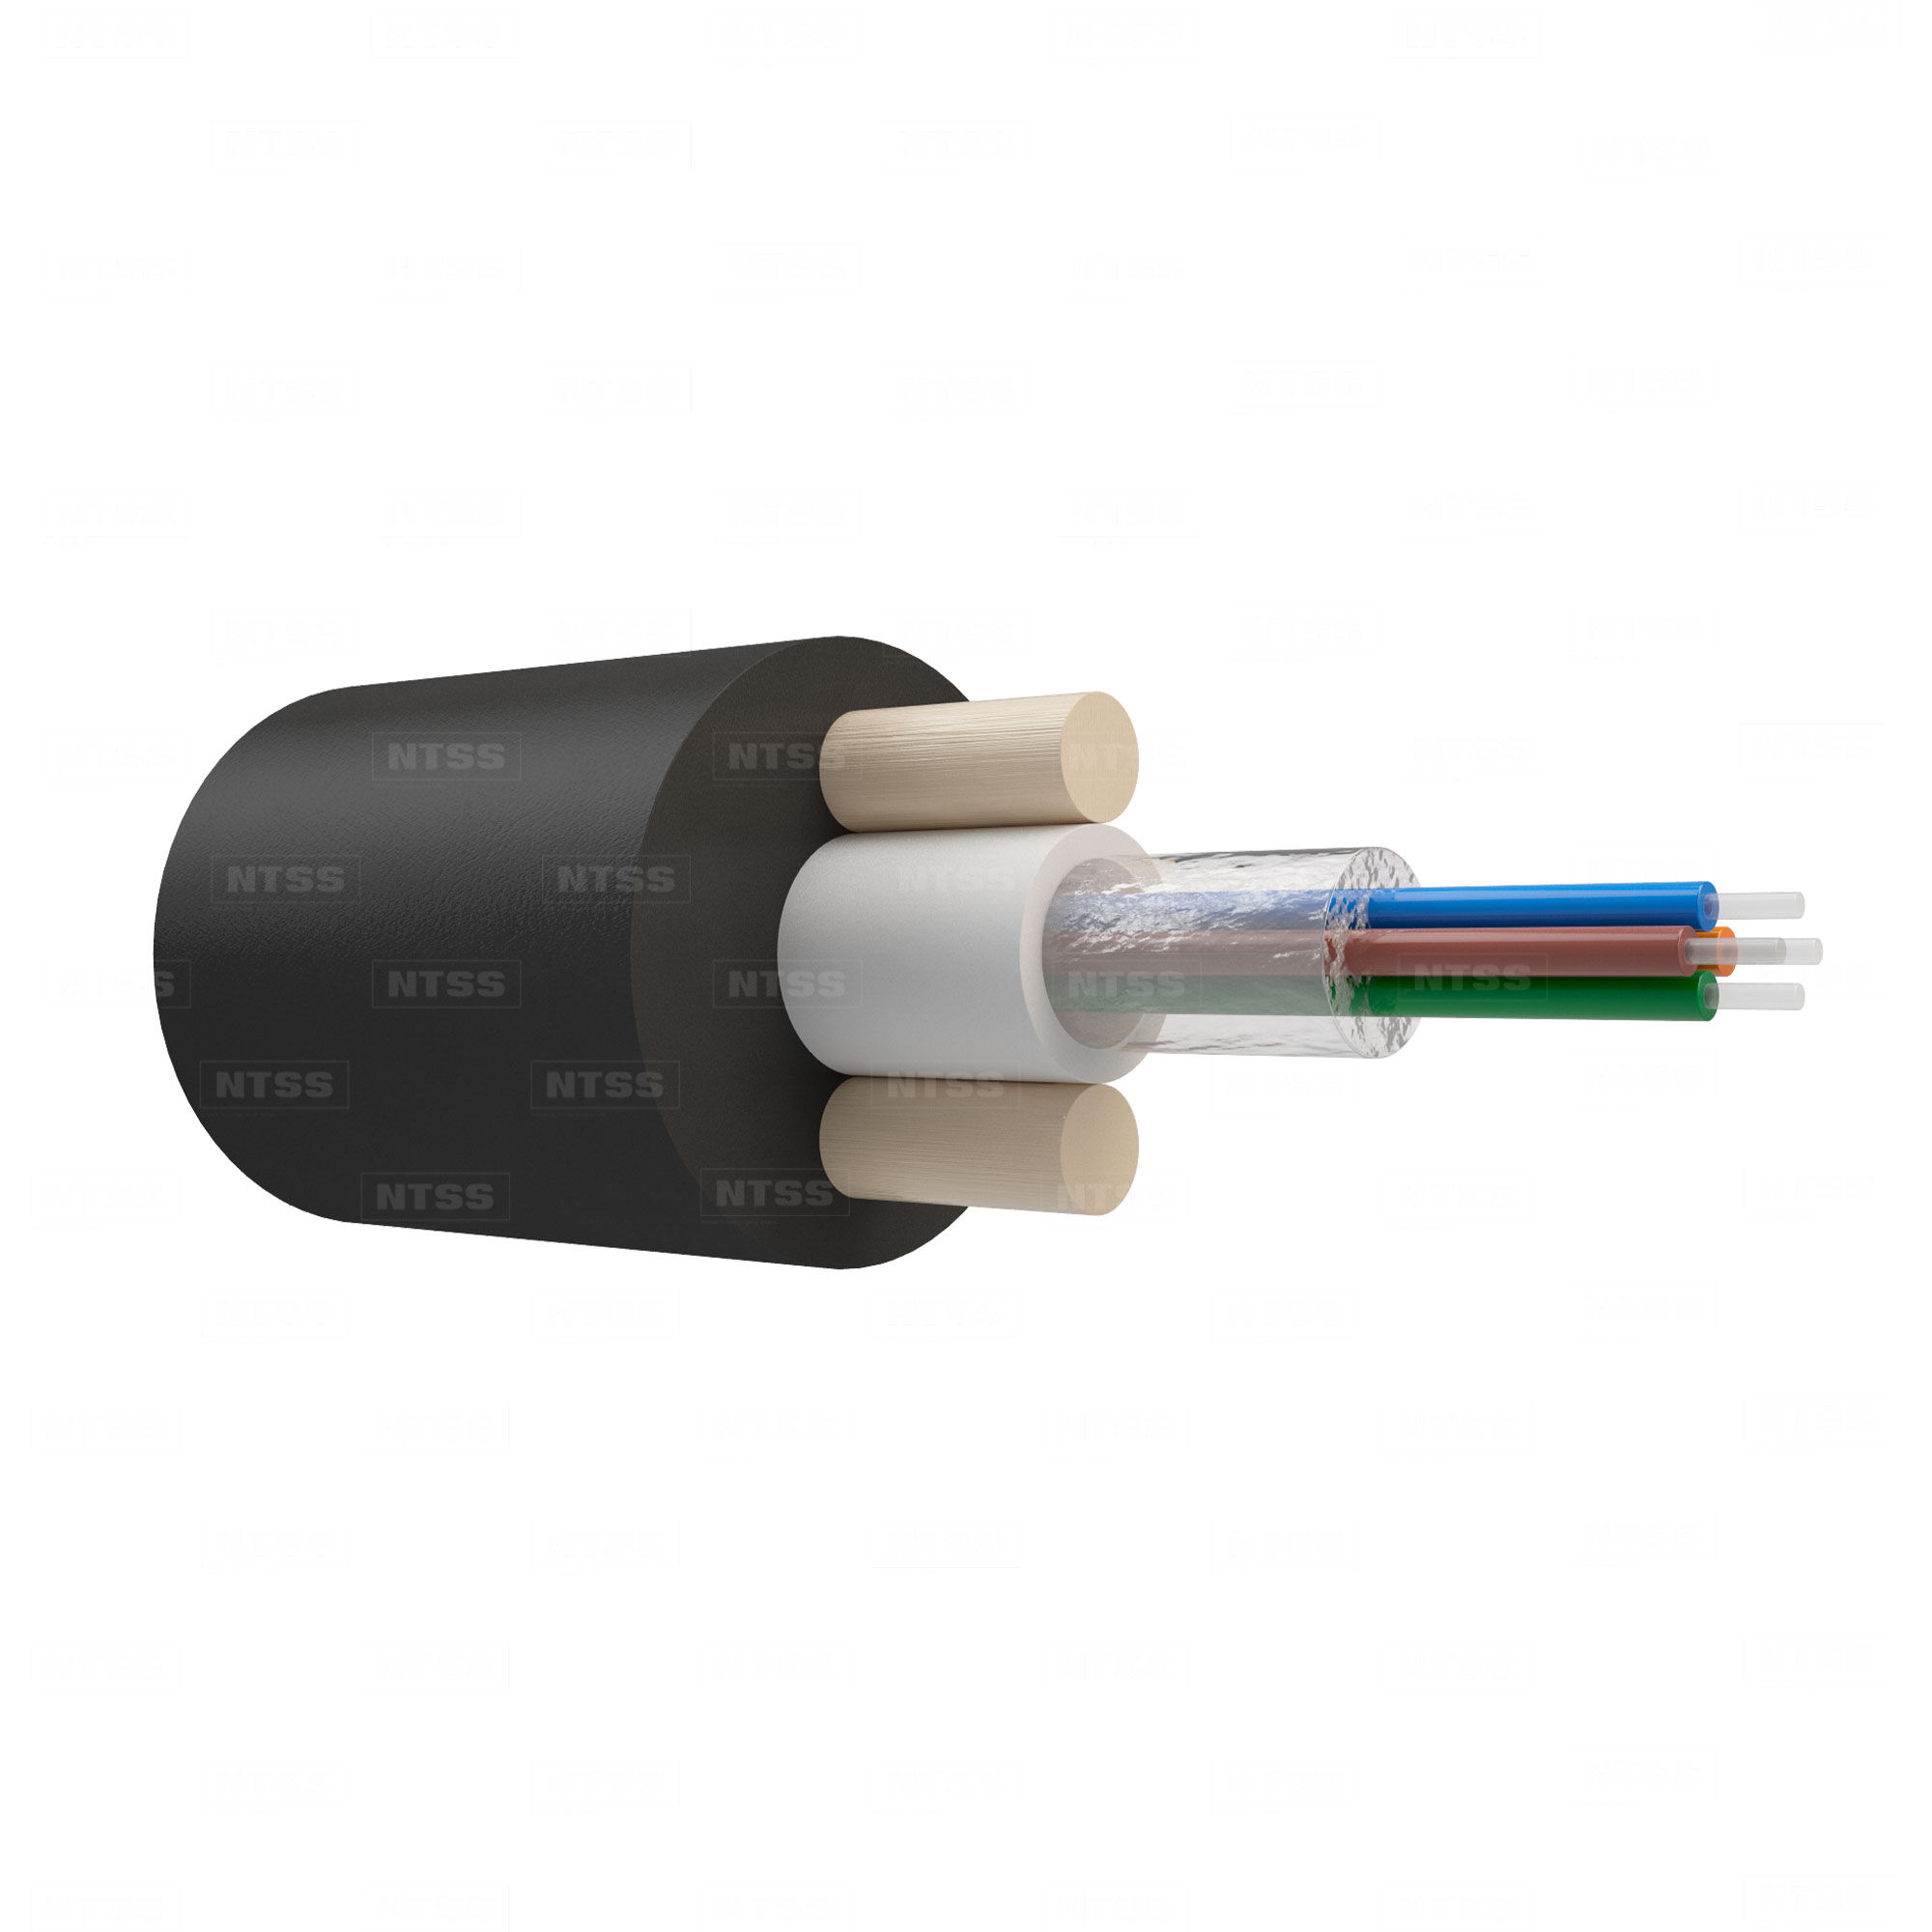 Оптический кабель NTSS дроп-круглый, с центральной трубкой, усилен стеклопрутками, 4 волокна, SM 9/125, G.657.A1, полиэт